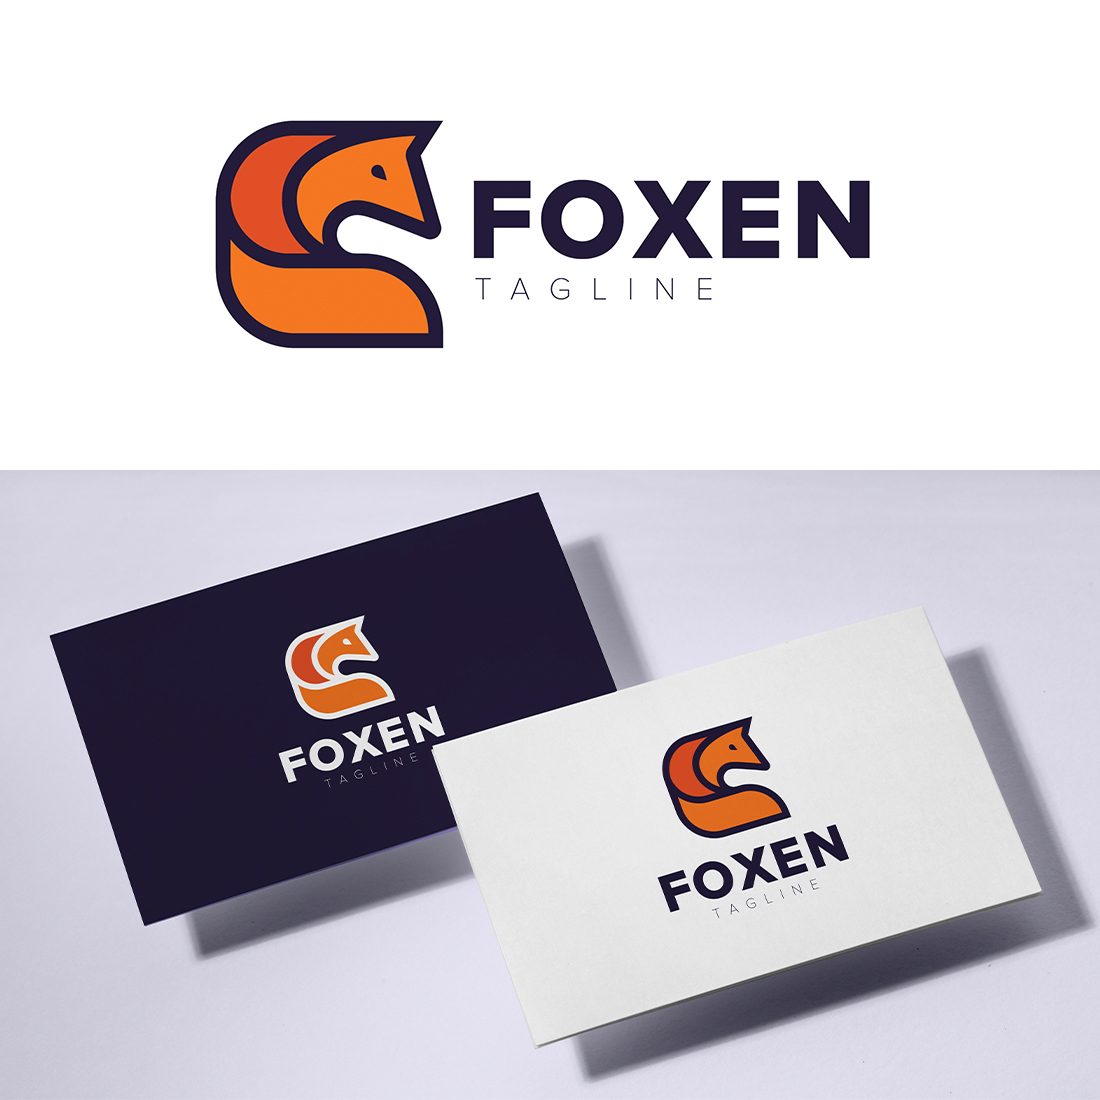 Foxen Logo Template cover image.